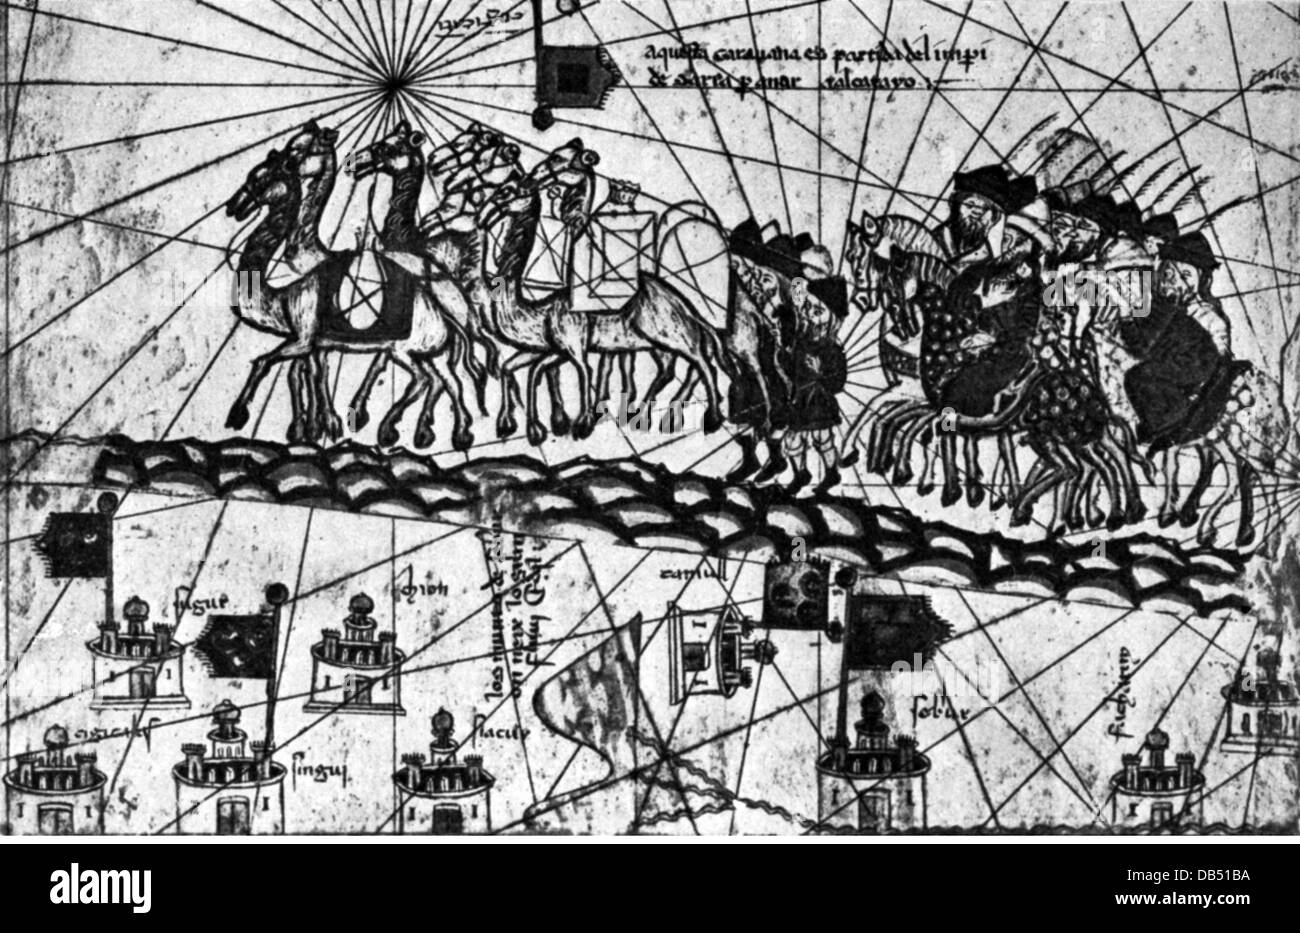 Comercio, transporte de mercancías, caravana en el camino a Cathay, a partir del Atlas catalán por Abraham Cresques (+ alrededor de 1387), 1375, Derechos adicionales-Clearences-no disponible Foto de stock